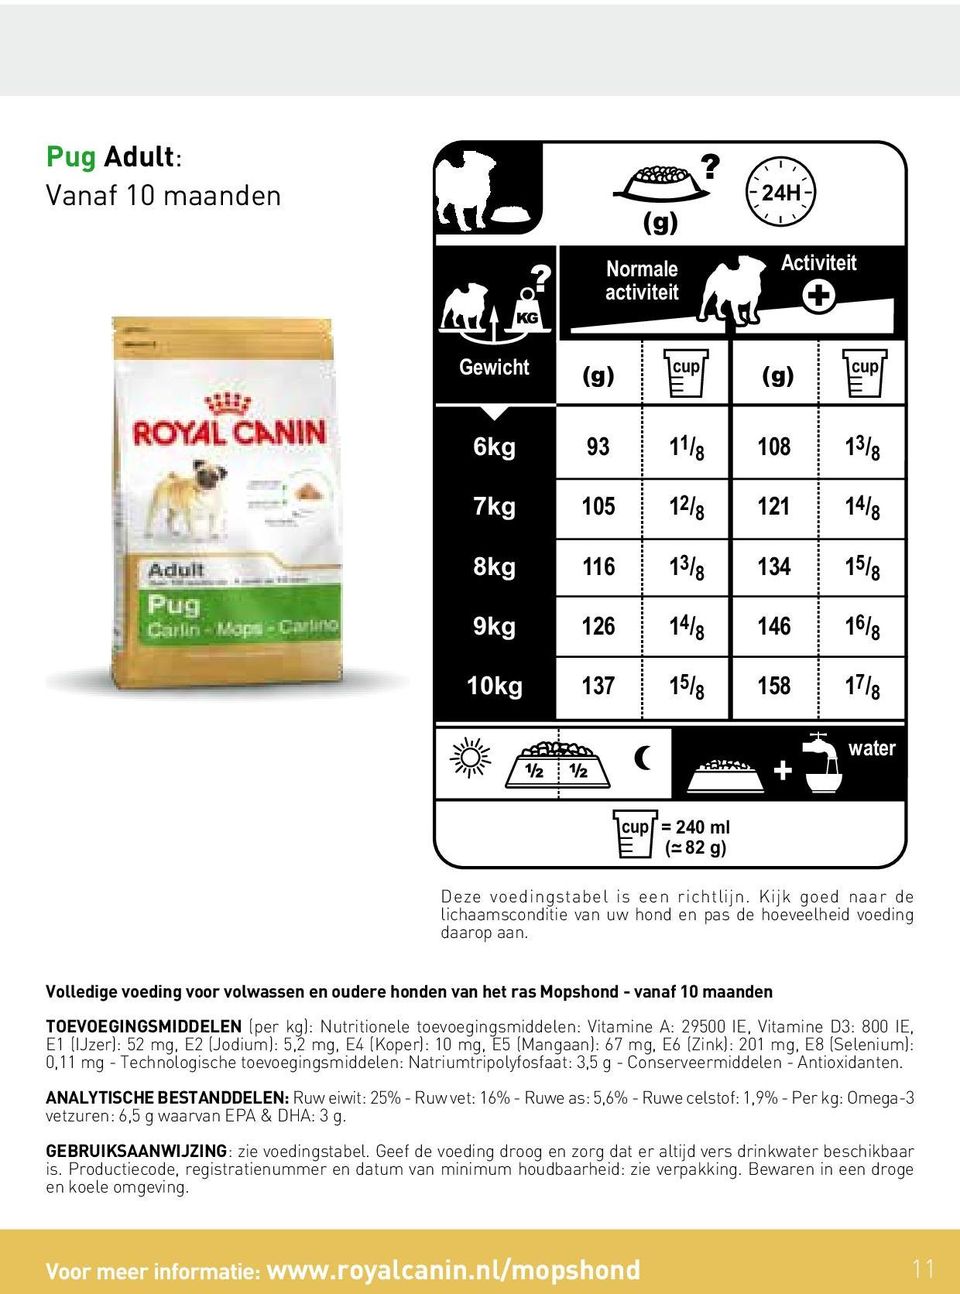 water cup = 240 ml ( 82 g) Deze voedingstabel is een richtlijn. Kijk goed naar de lichaamsconditie van uw hond en pas de hoeveelheid voeding daarop aan.